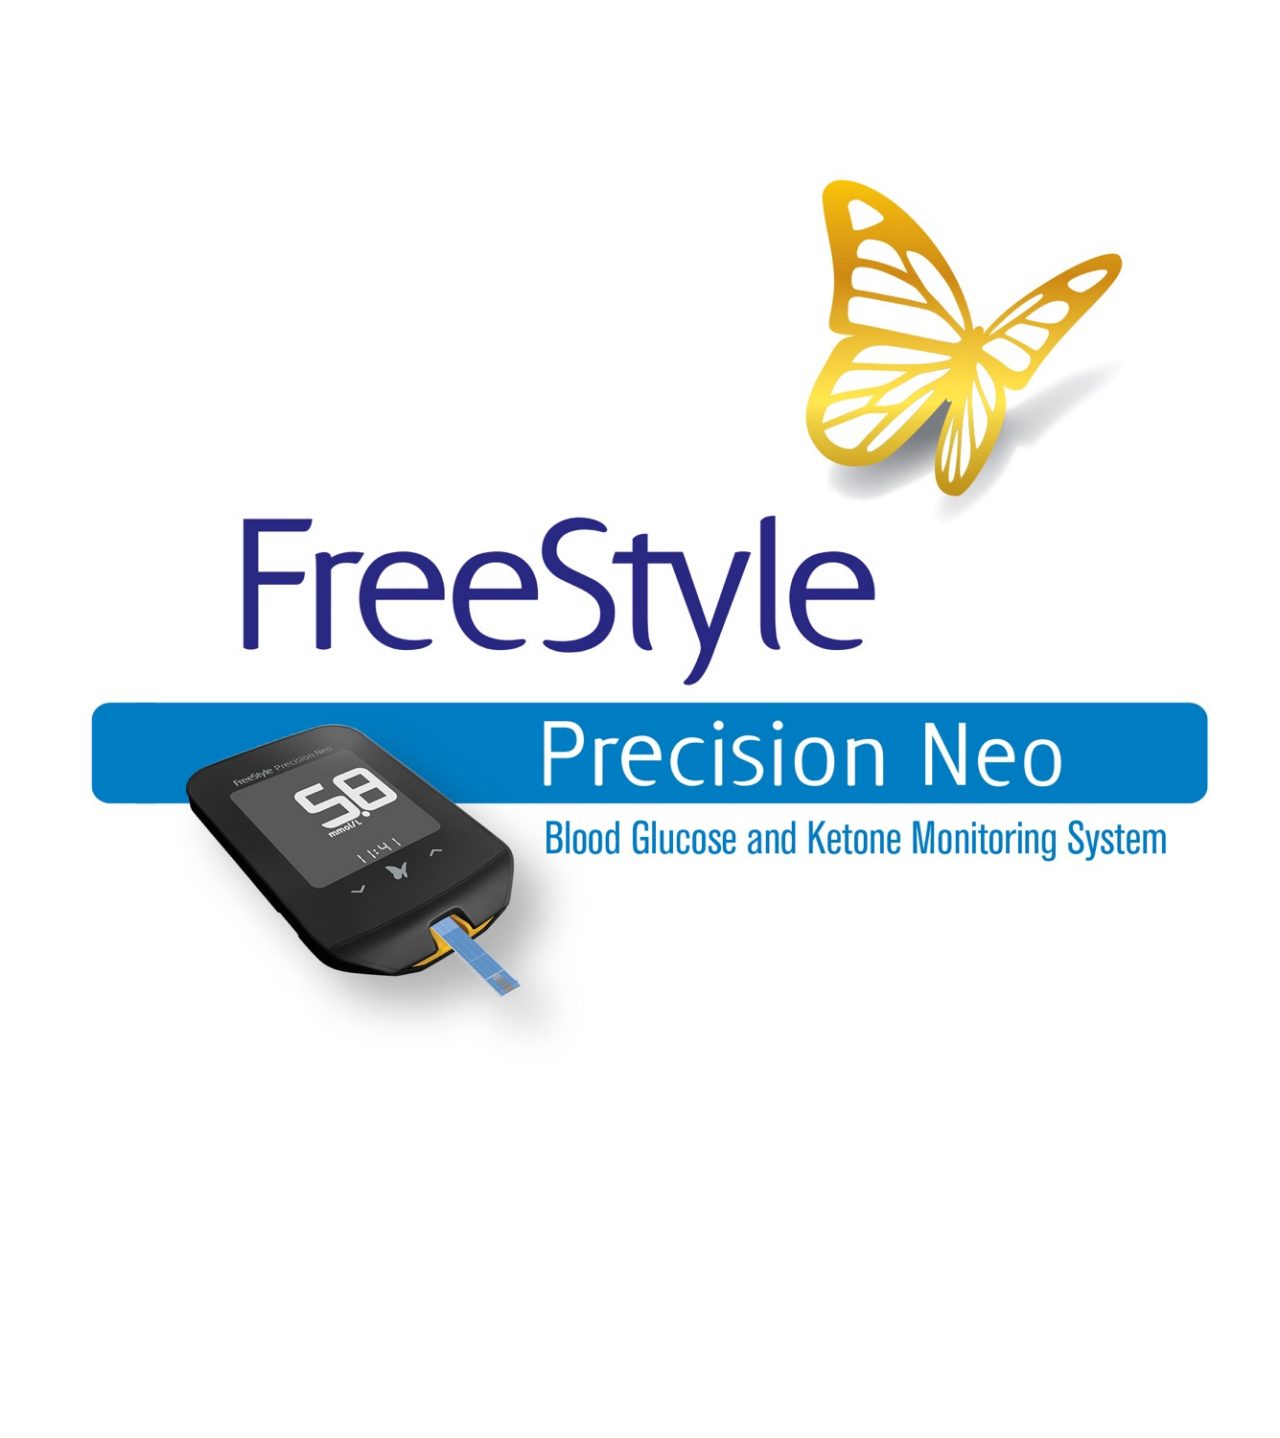 FreeStyle Precision Neo